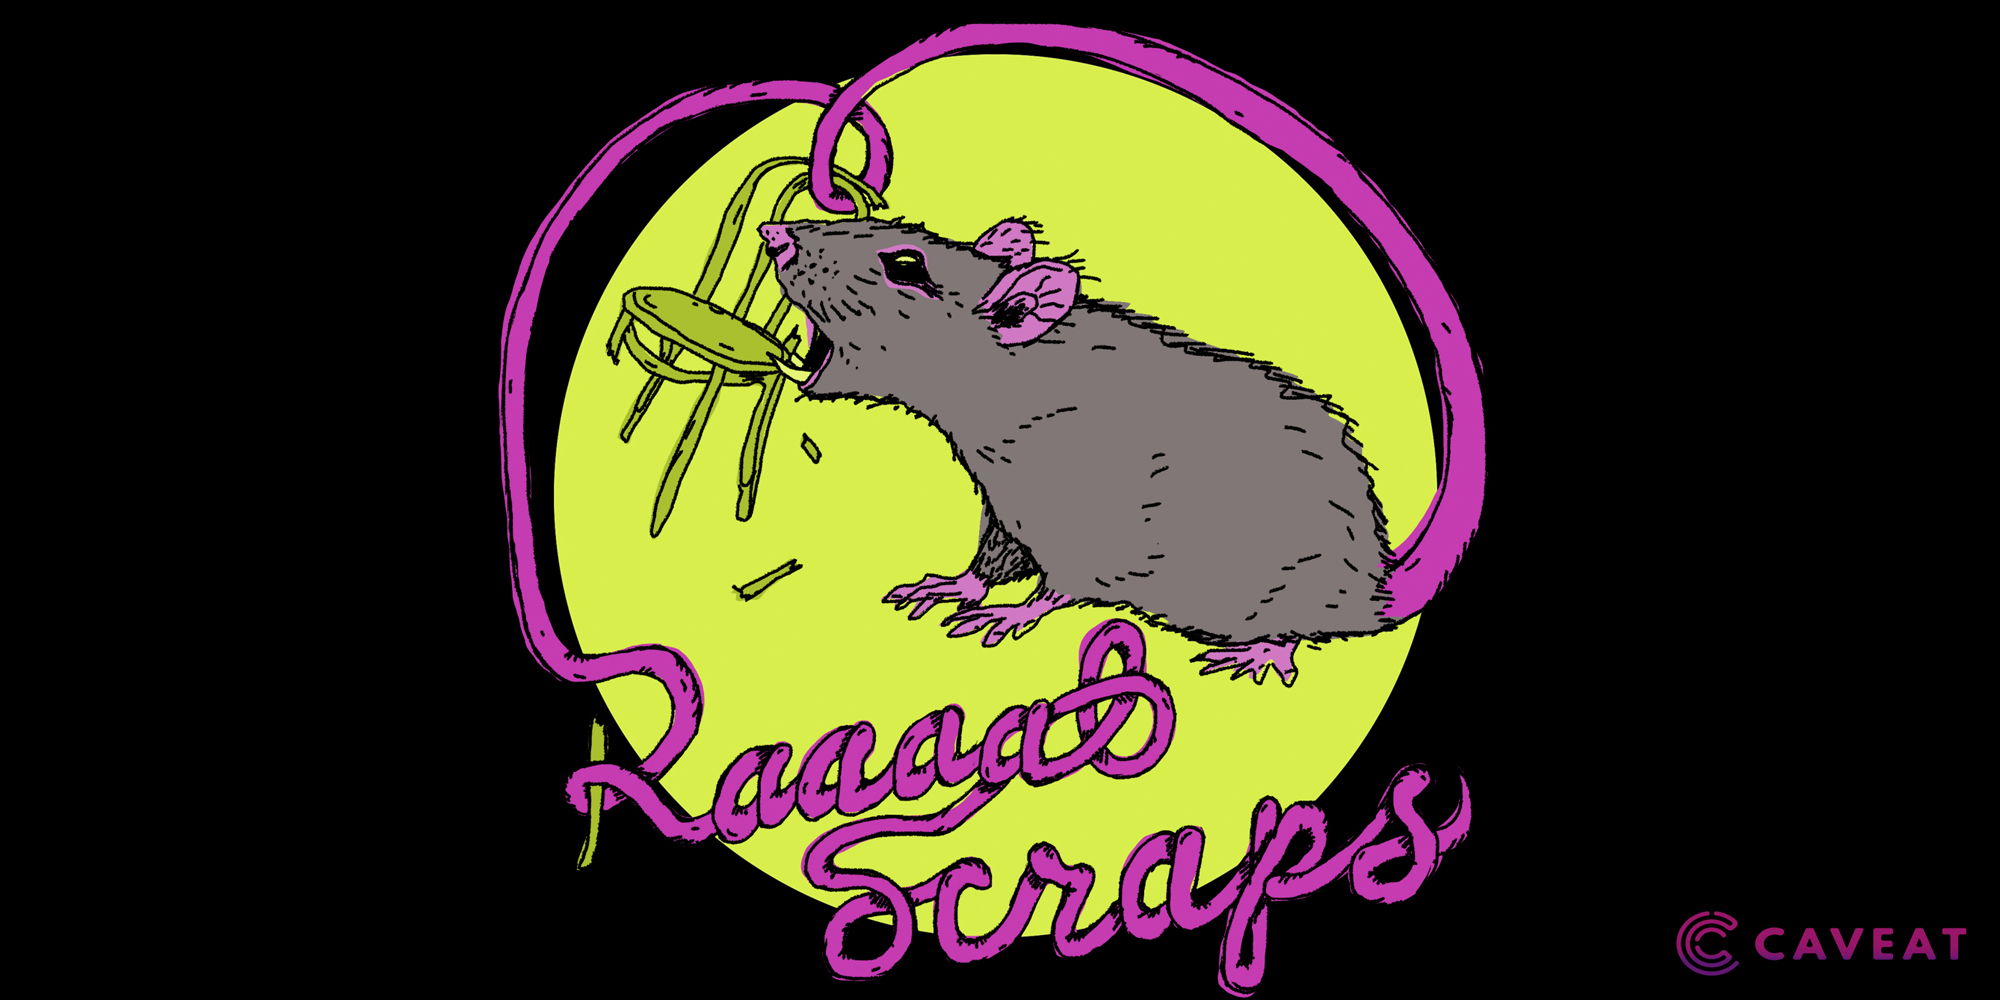 RaaaatScraps on Feb 5, 2023 promotional image